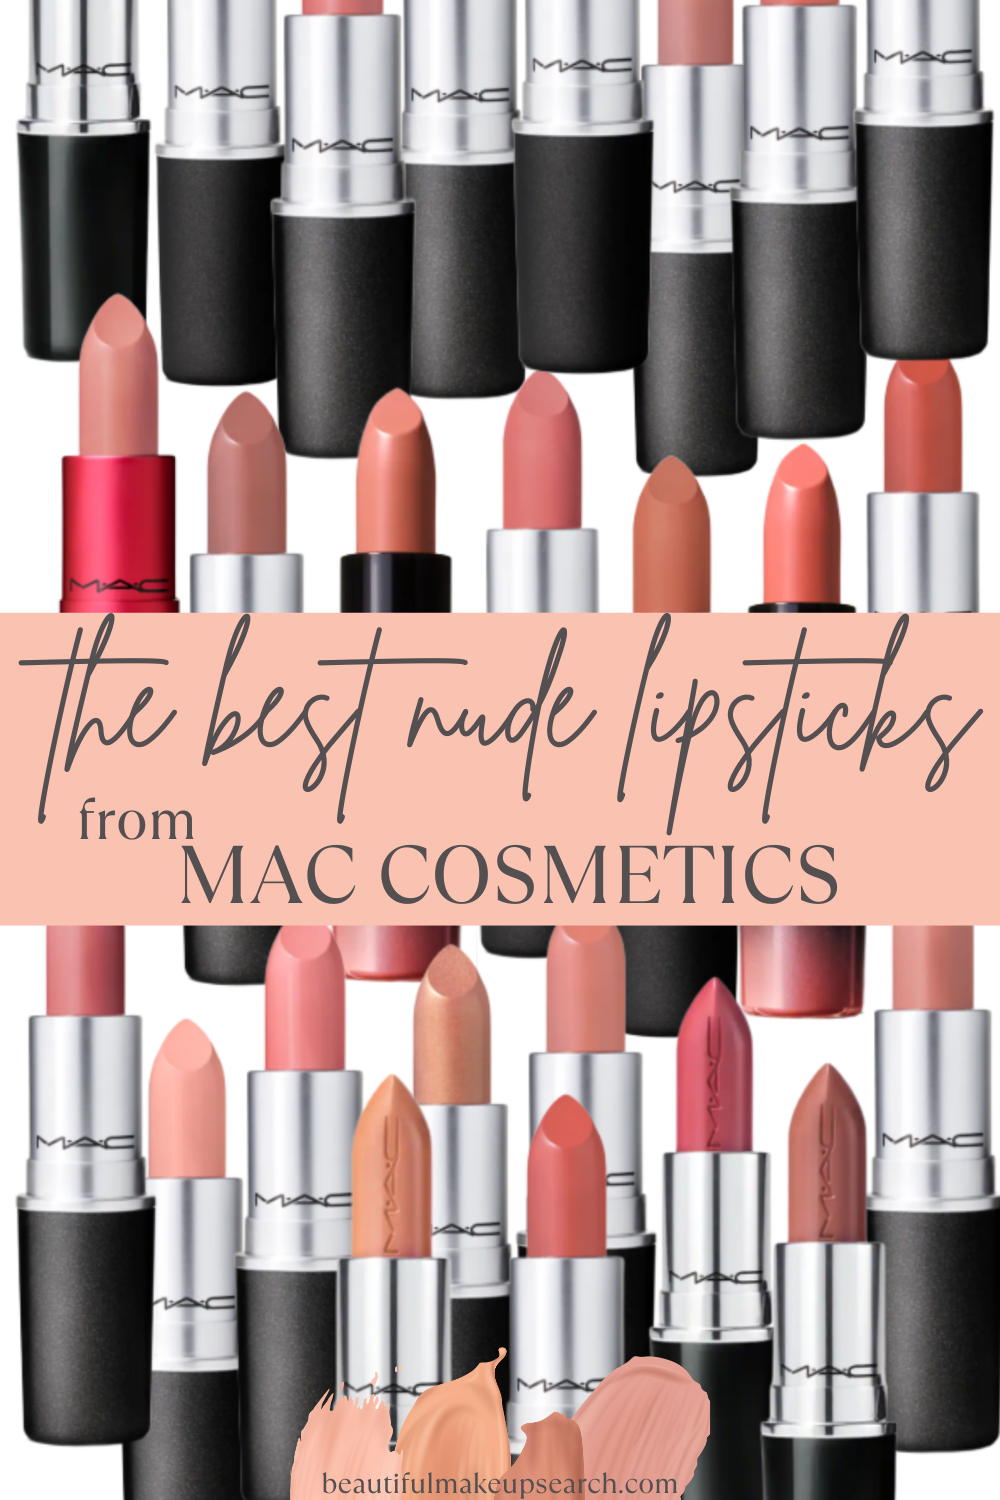 skelet auteursrechten De slaapkamer schoonmaken 25 Nude Lipsticks from MAC Cosmetics — Beautiful Makeup Search